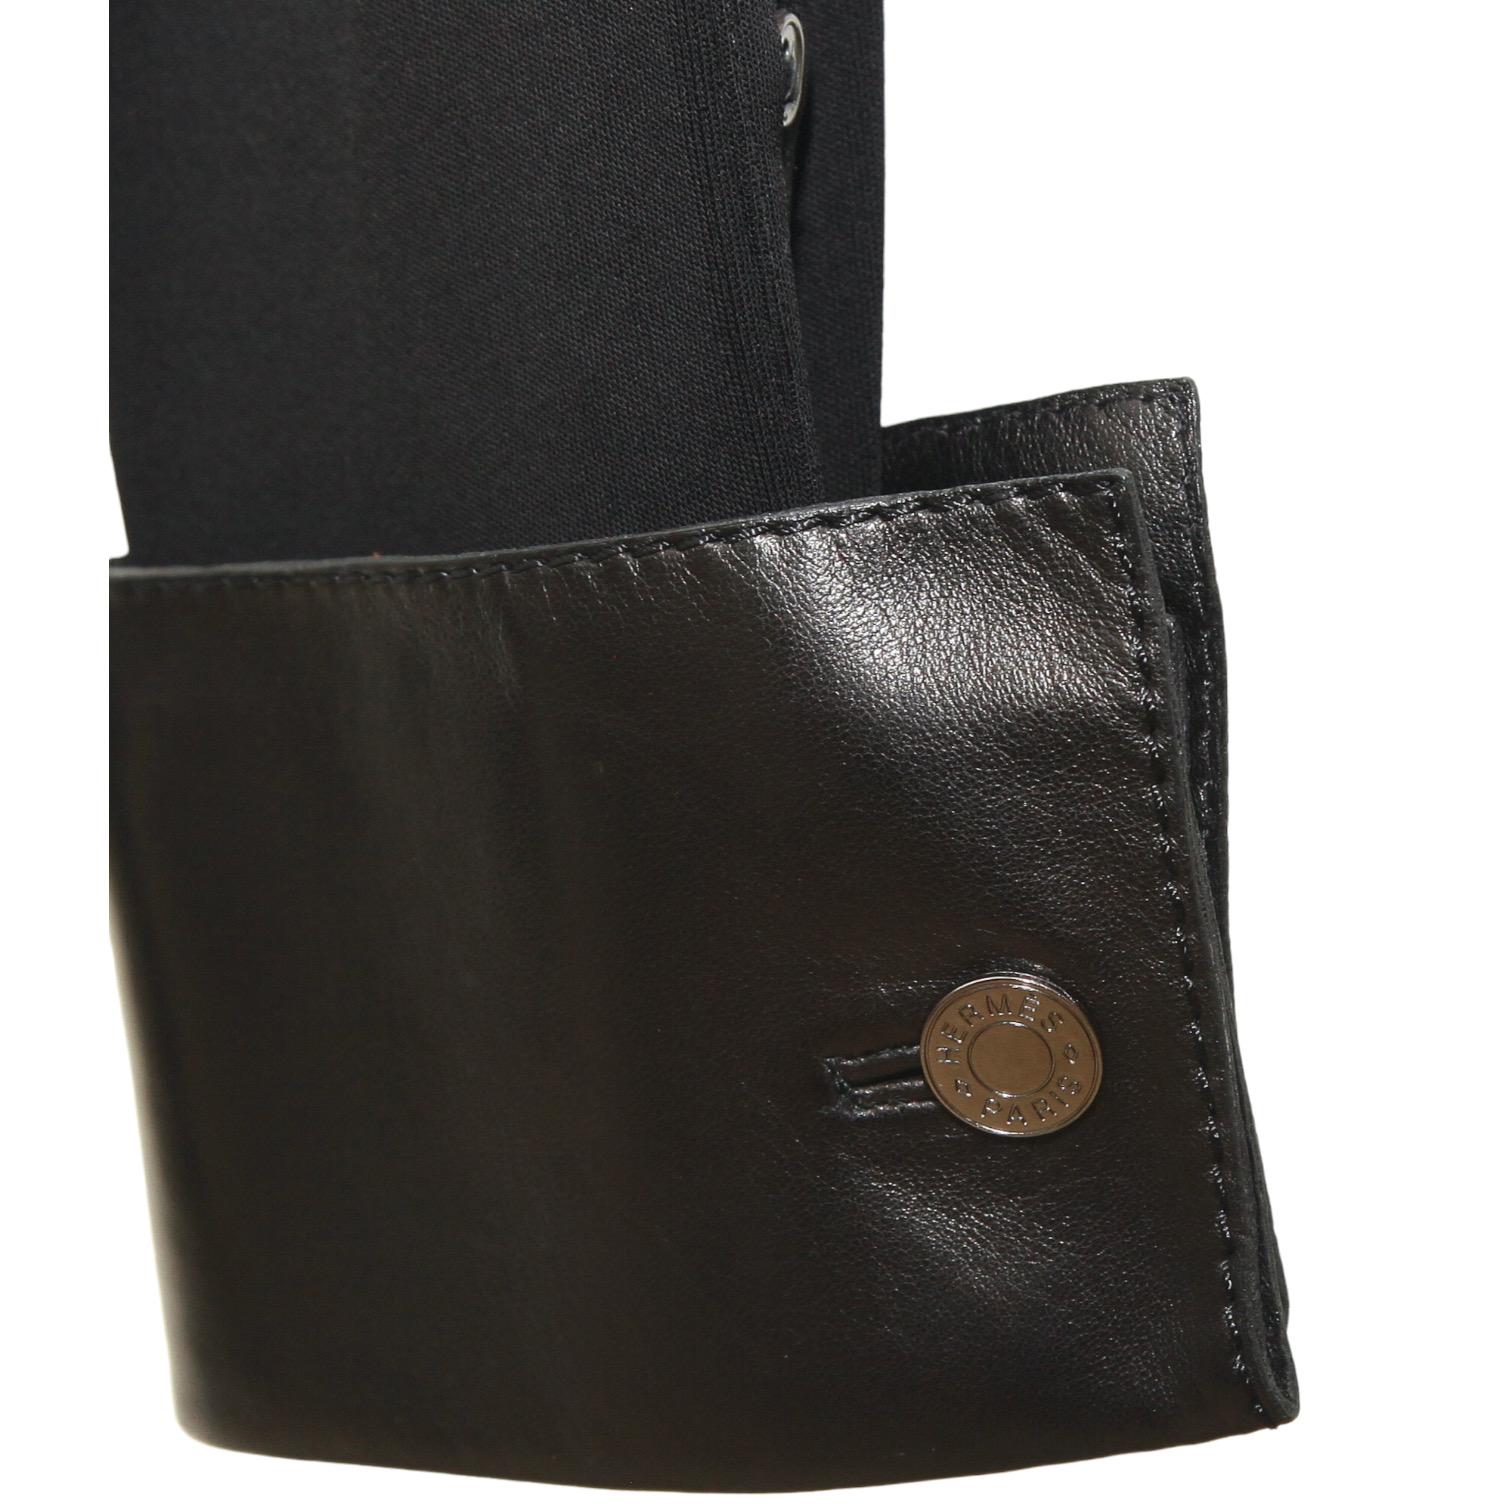 HERMES Black Blouse Shirt Top Leather Viscose Palladium Buttons Sz 42 VINTAGE For Sale 3